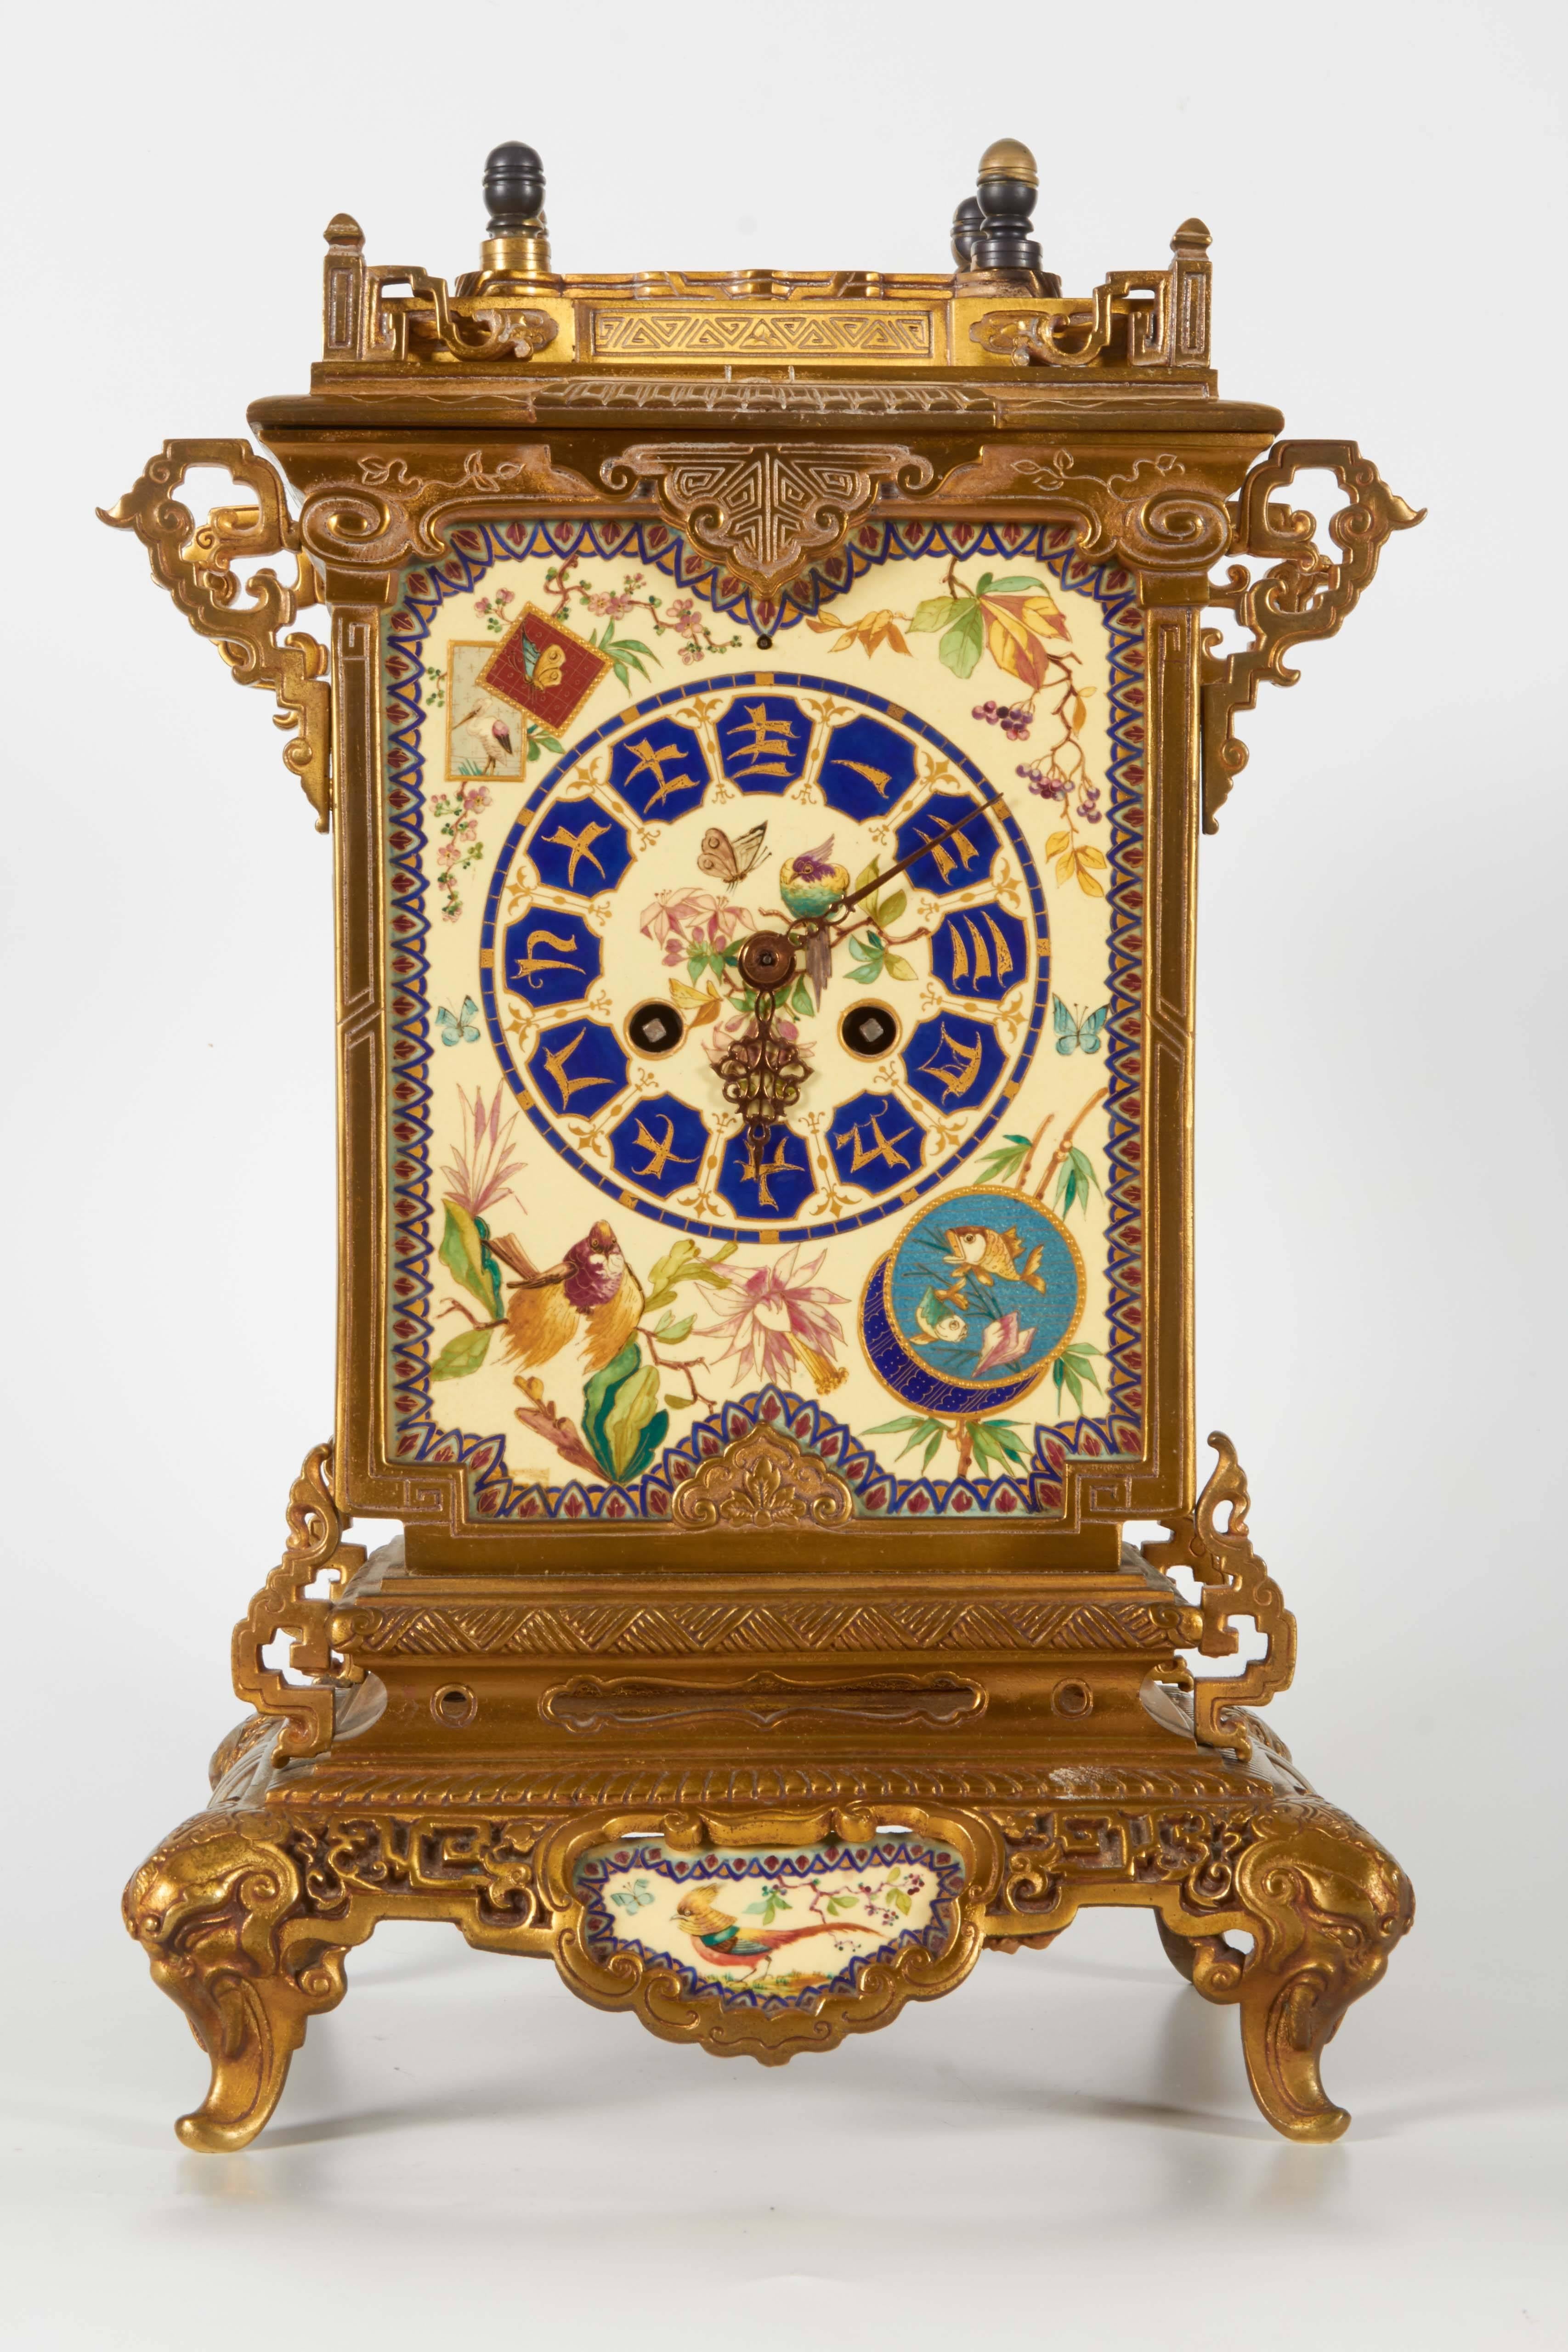 Pendule à mouvement esthétique en porcelaine peinte à la main, montée sur bronze doré, attribuée à E. Lièvre, très probablement fondue par F. Barbedienne, très inhabituelle et très rare, datant du 19e siècle. Cette horloge a été conçue par le